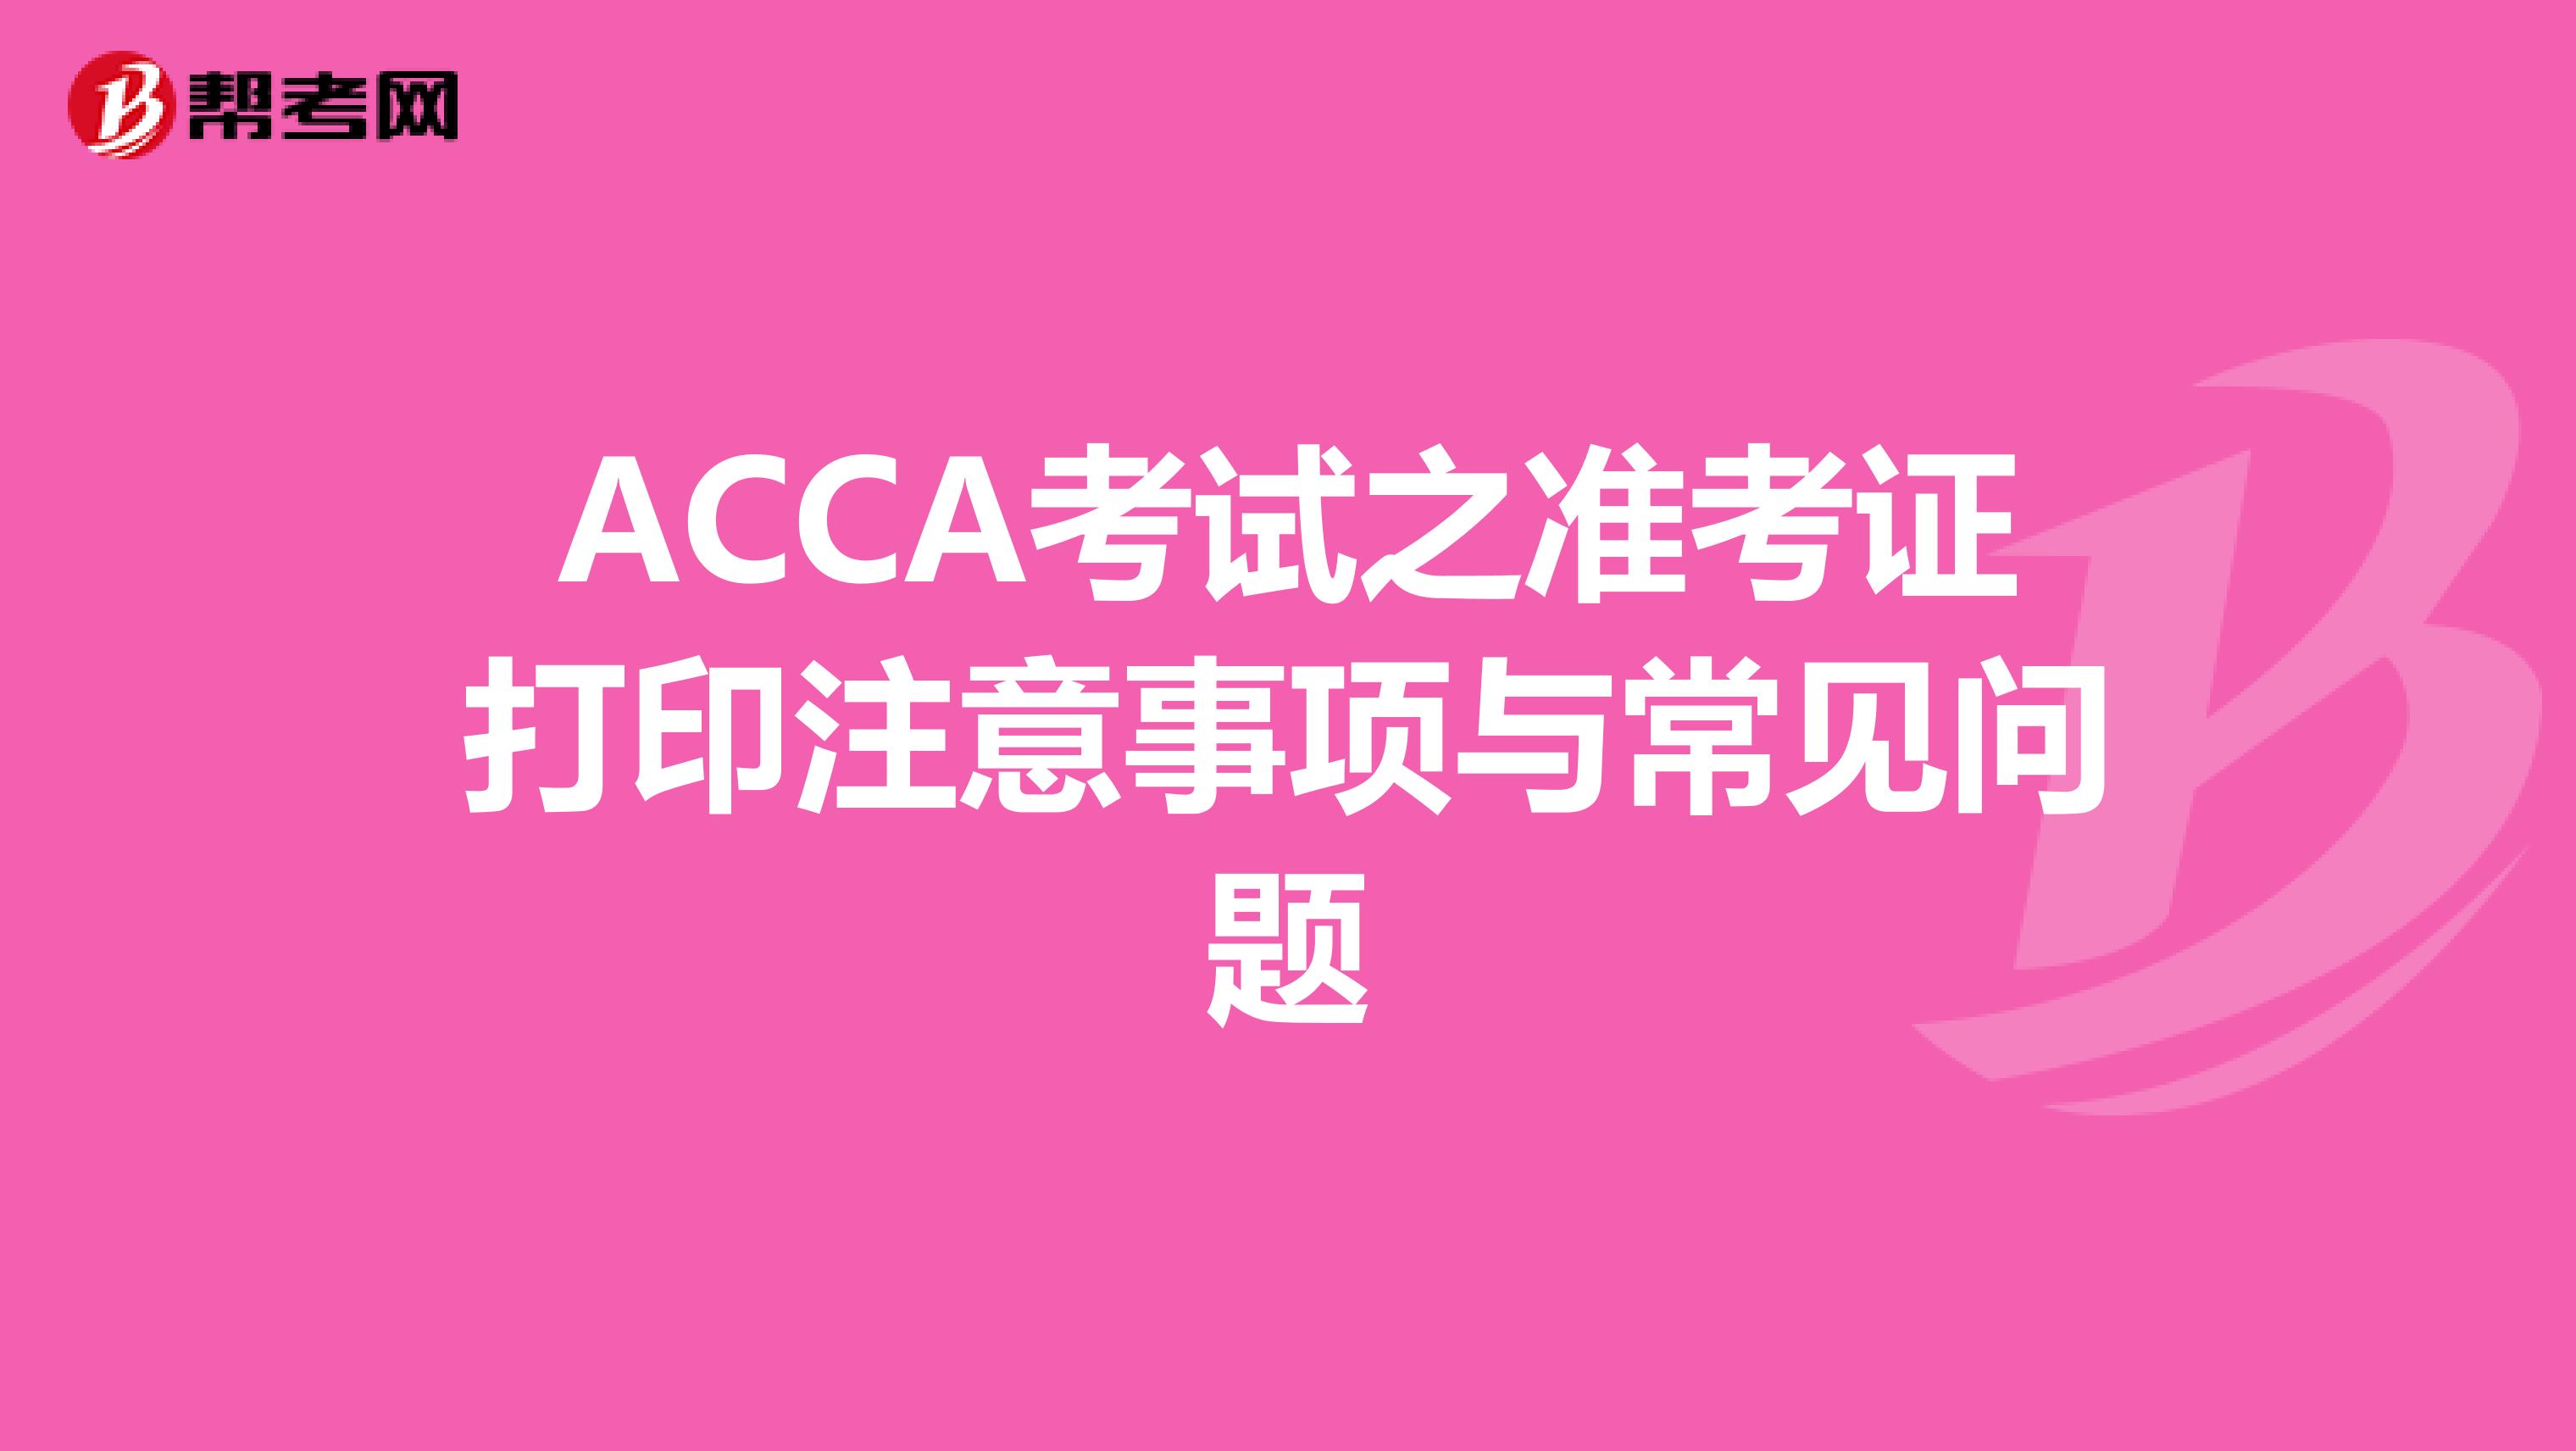 ACCA考试之准考证打印注意事项与常见问题